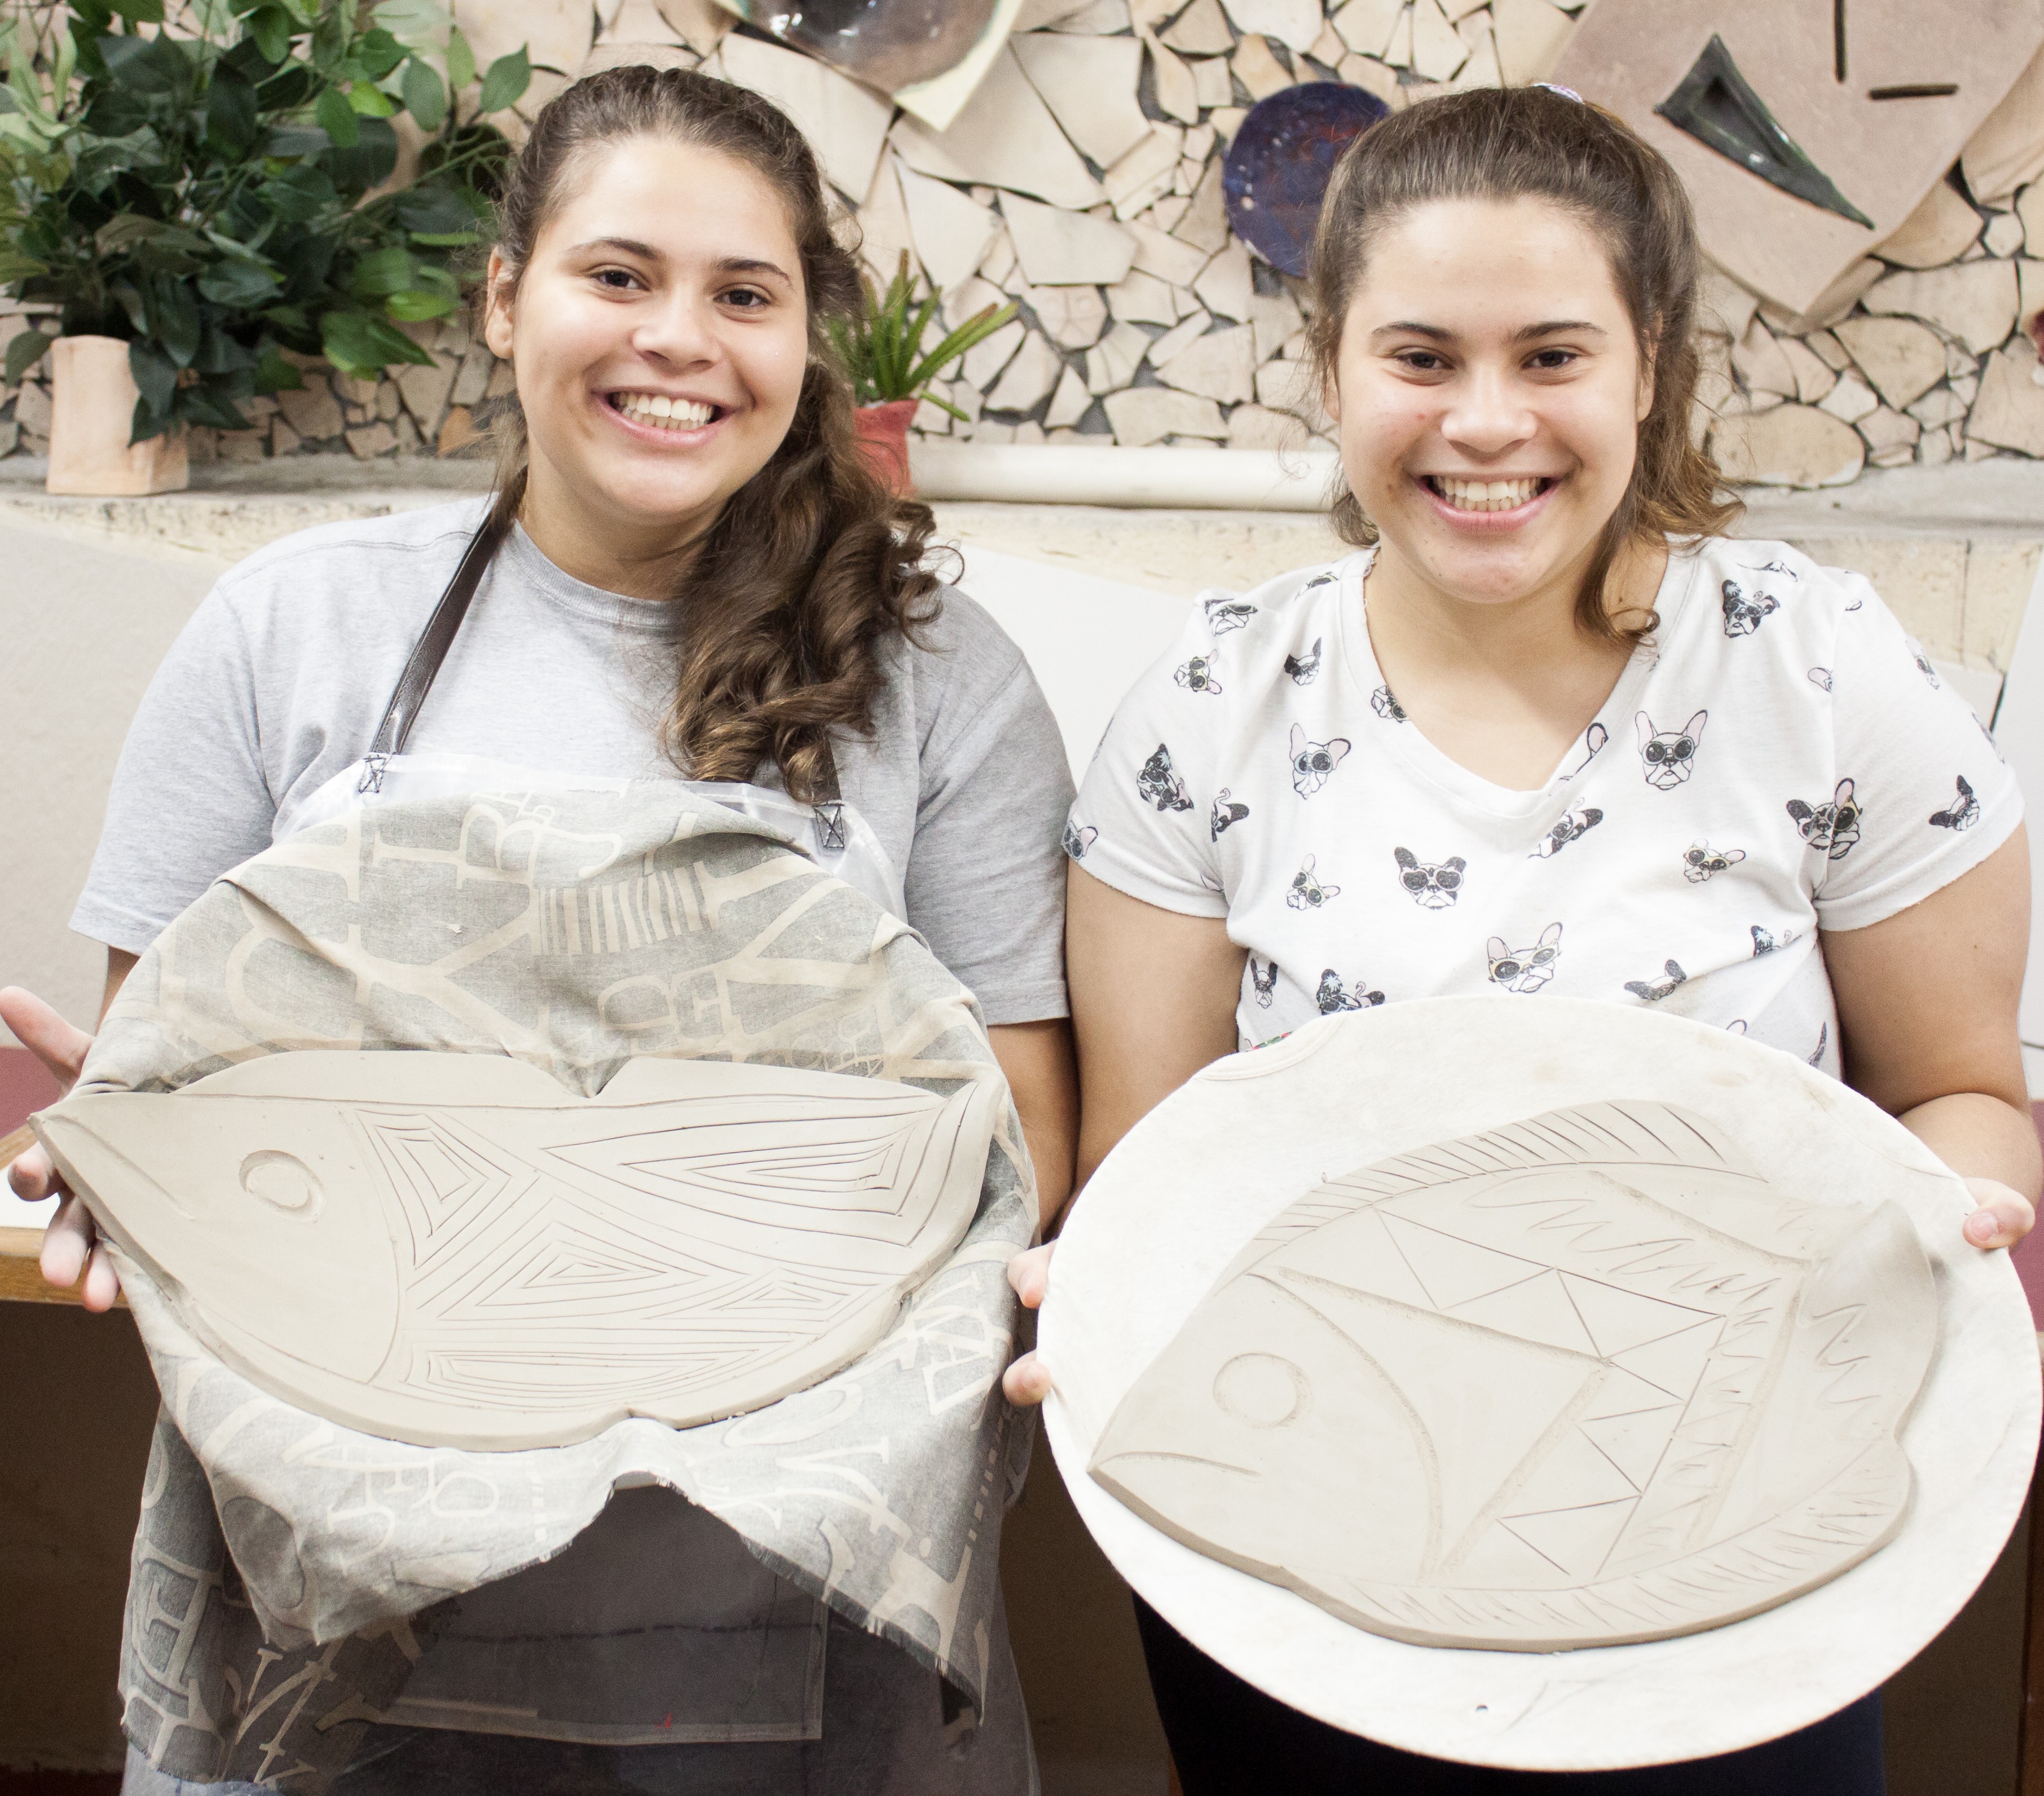 Projeto resgata jovens em situação de vulnerabilidade social através da cerâmica (Foto: Divulgação)